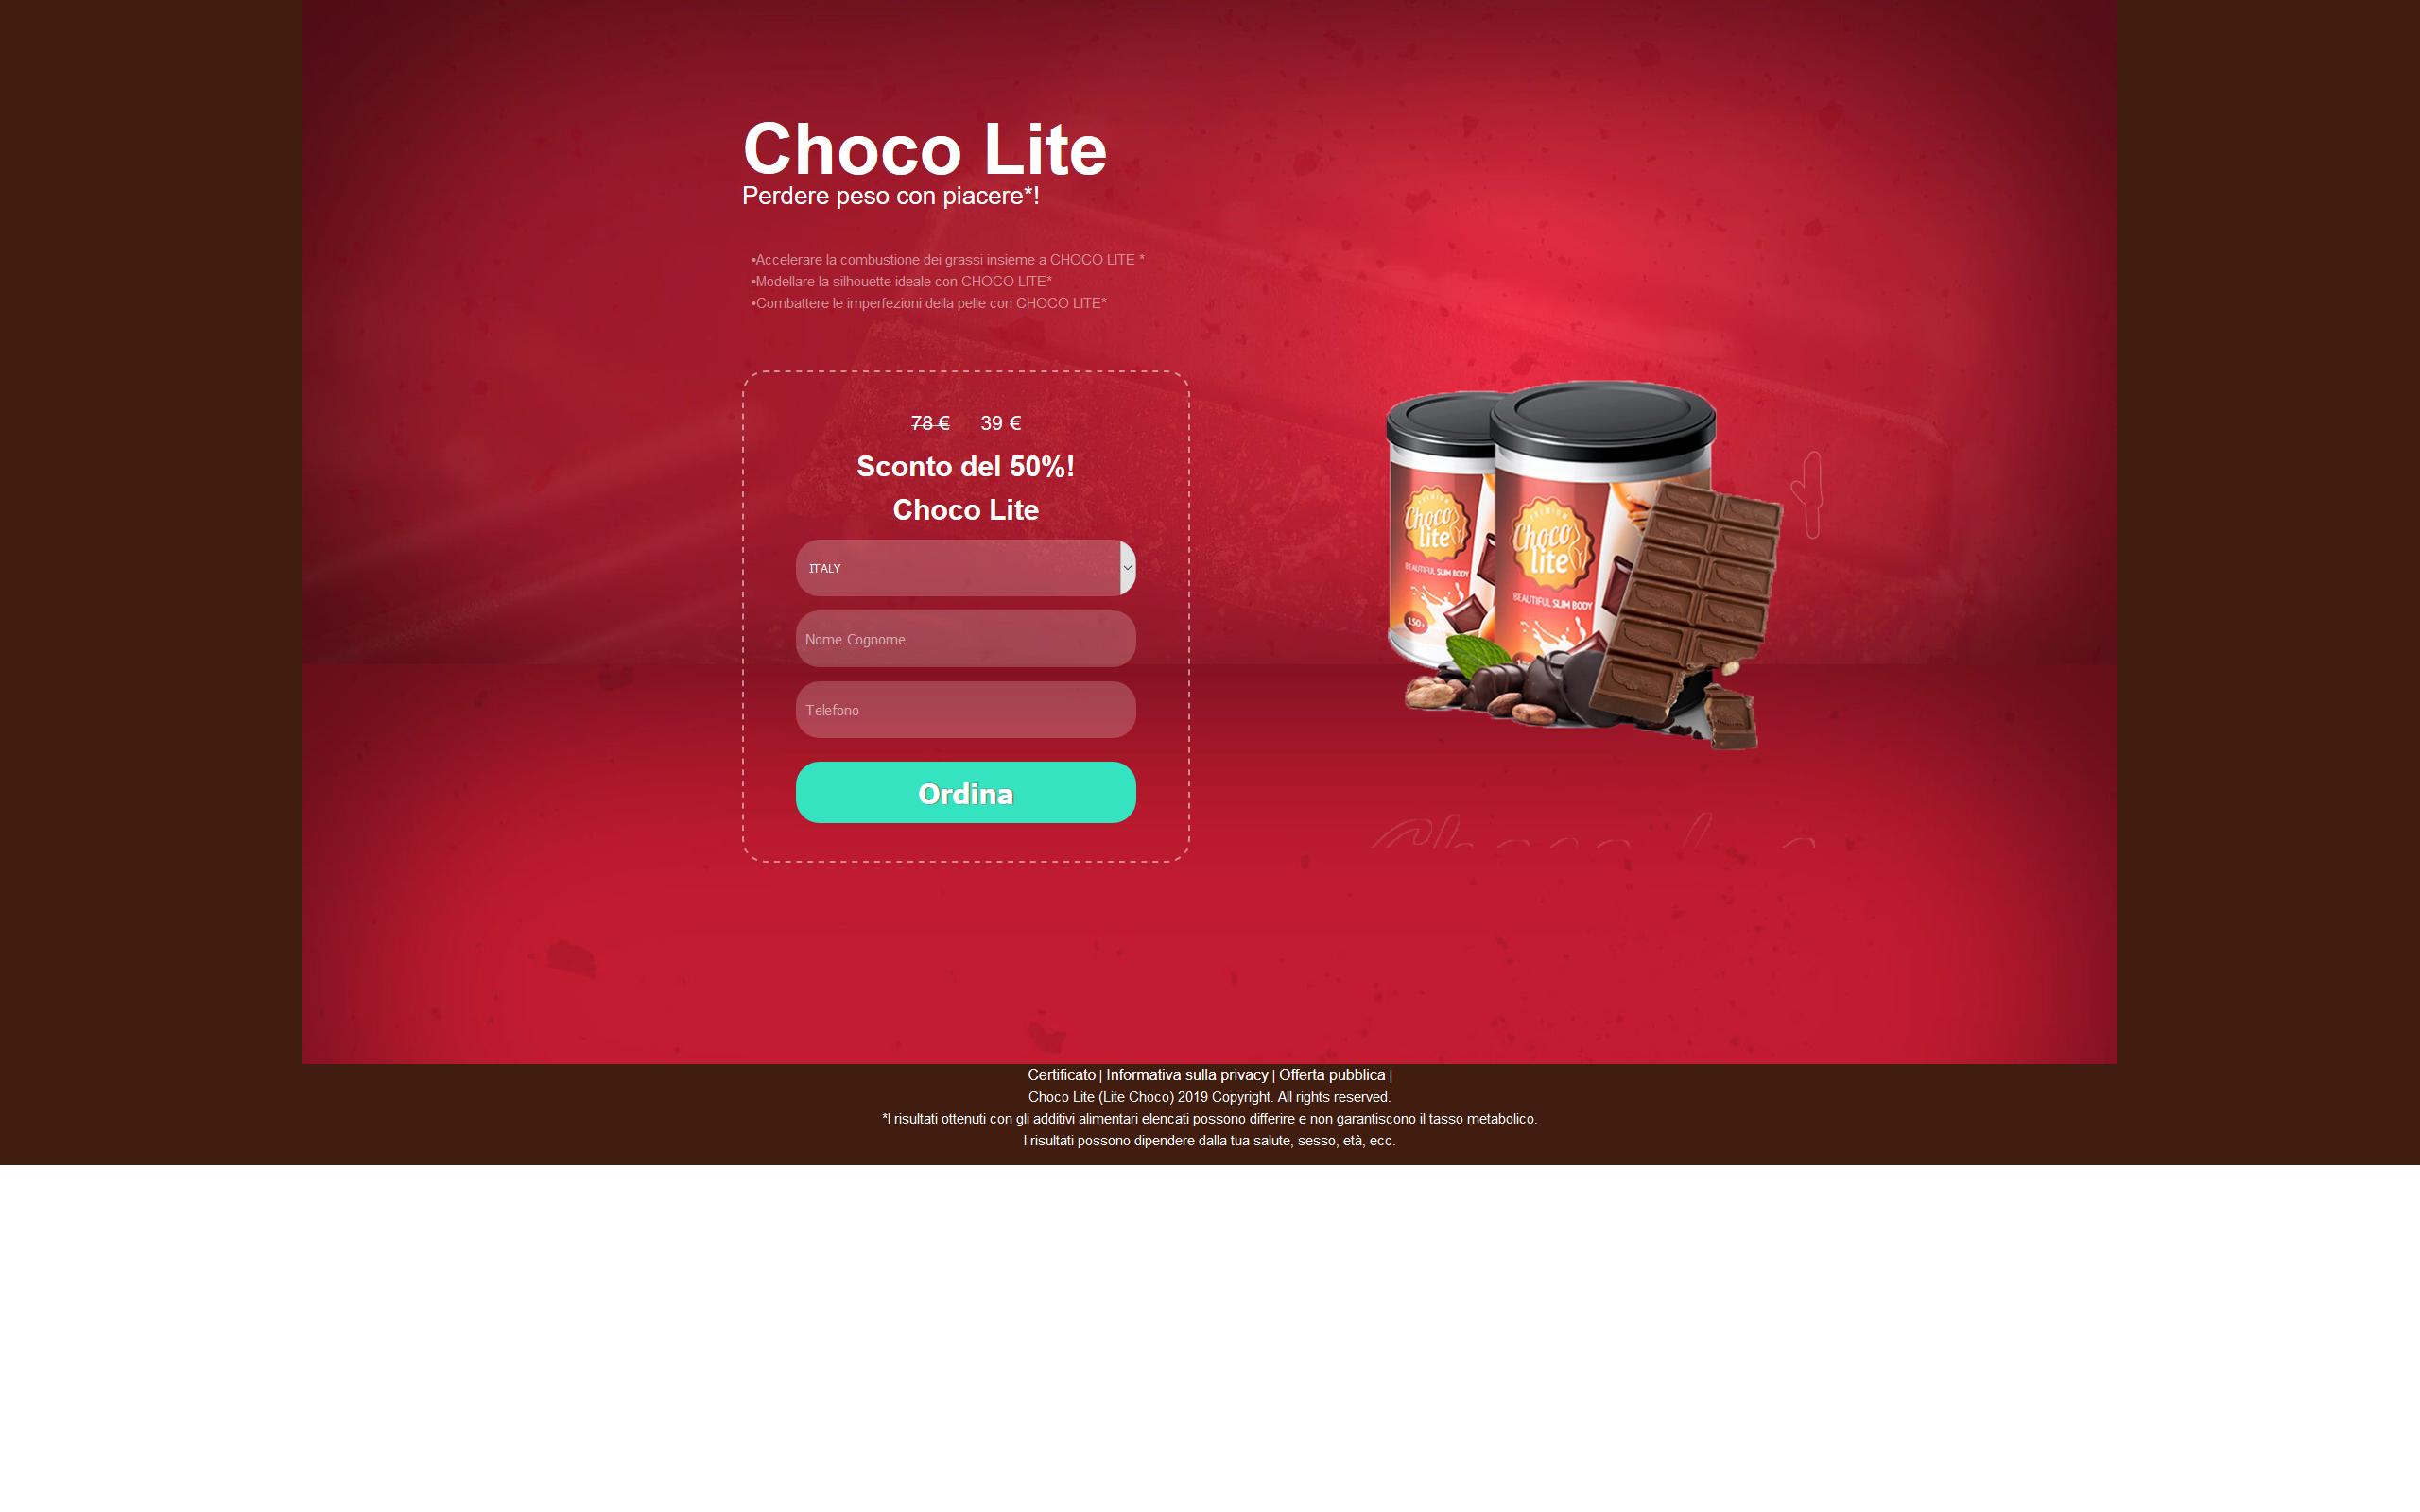 Choco Lite - Gusztustalan átverés, ne pocsékold rá a pénzed!